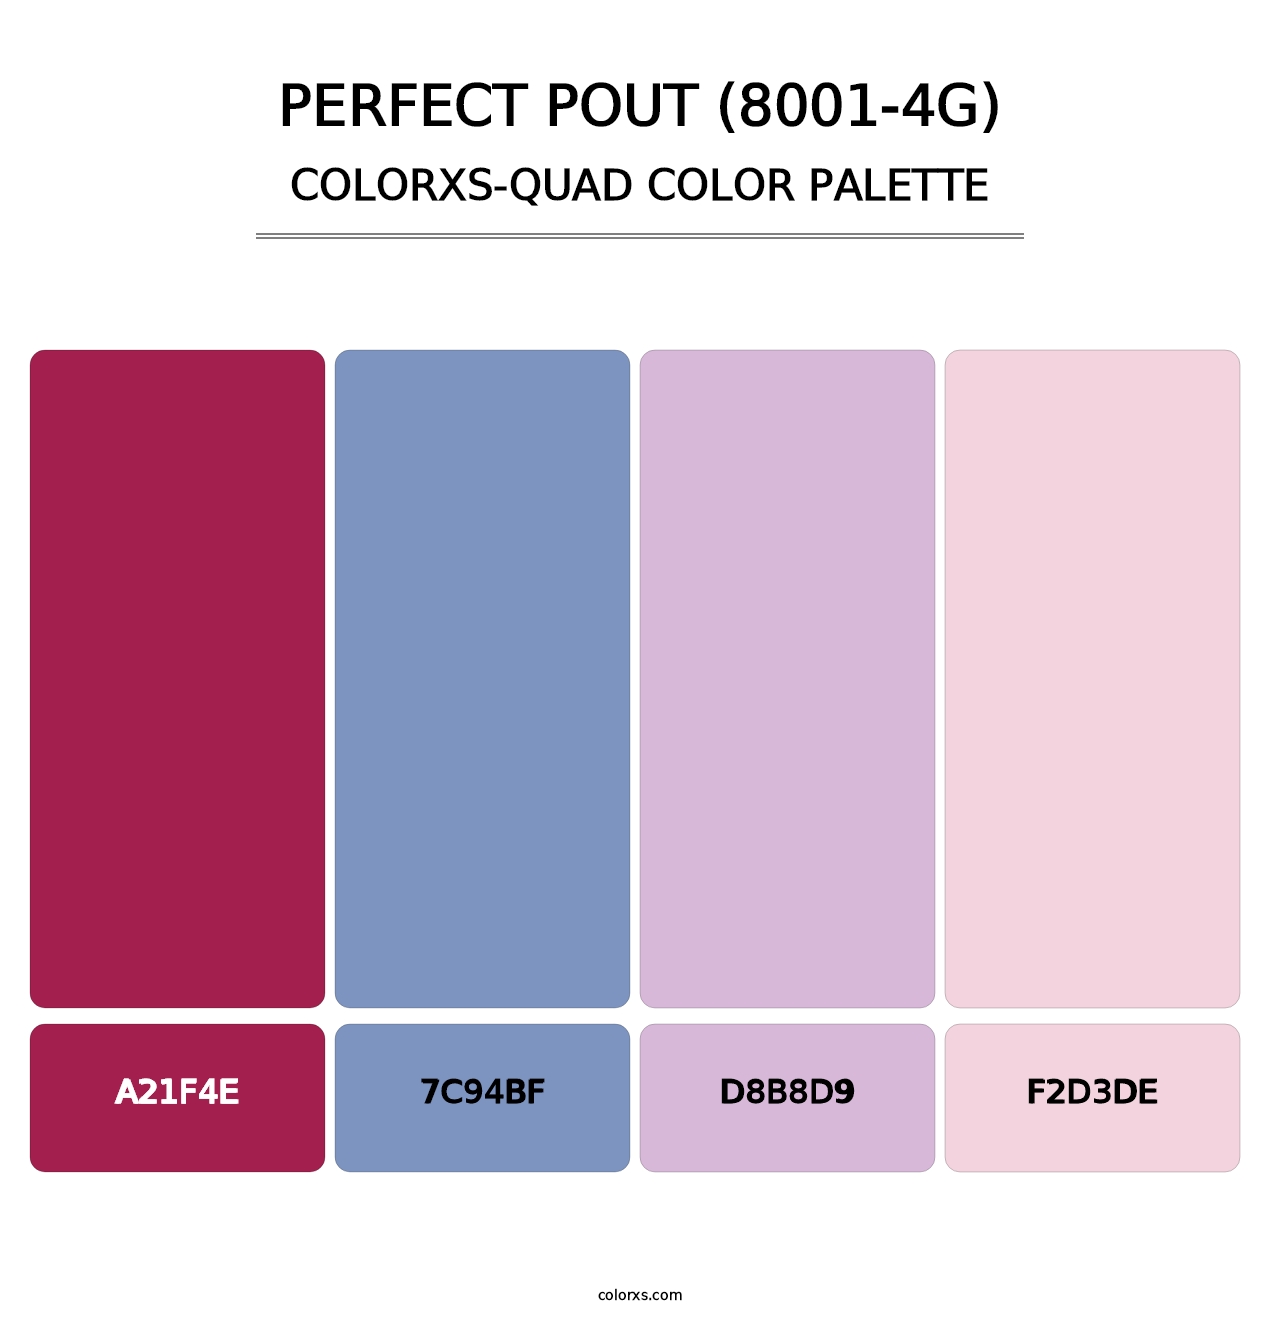 Perfect Pout (8001-4G) - Colorxs Quad Palette